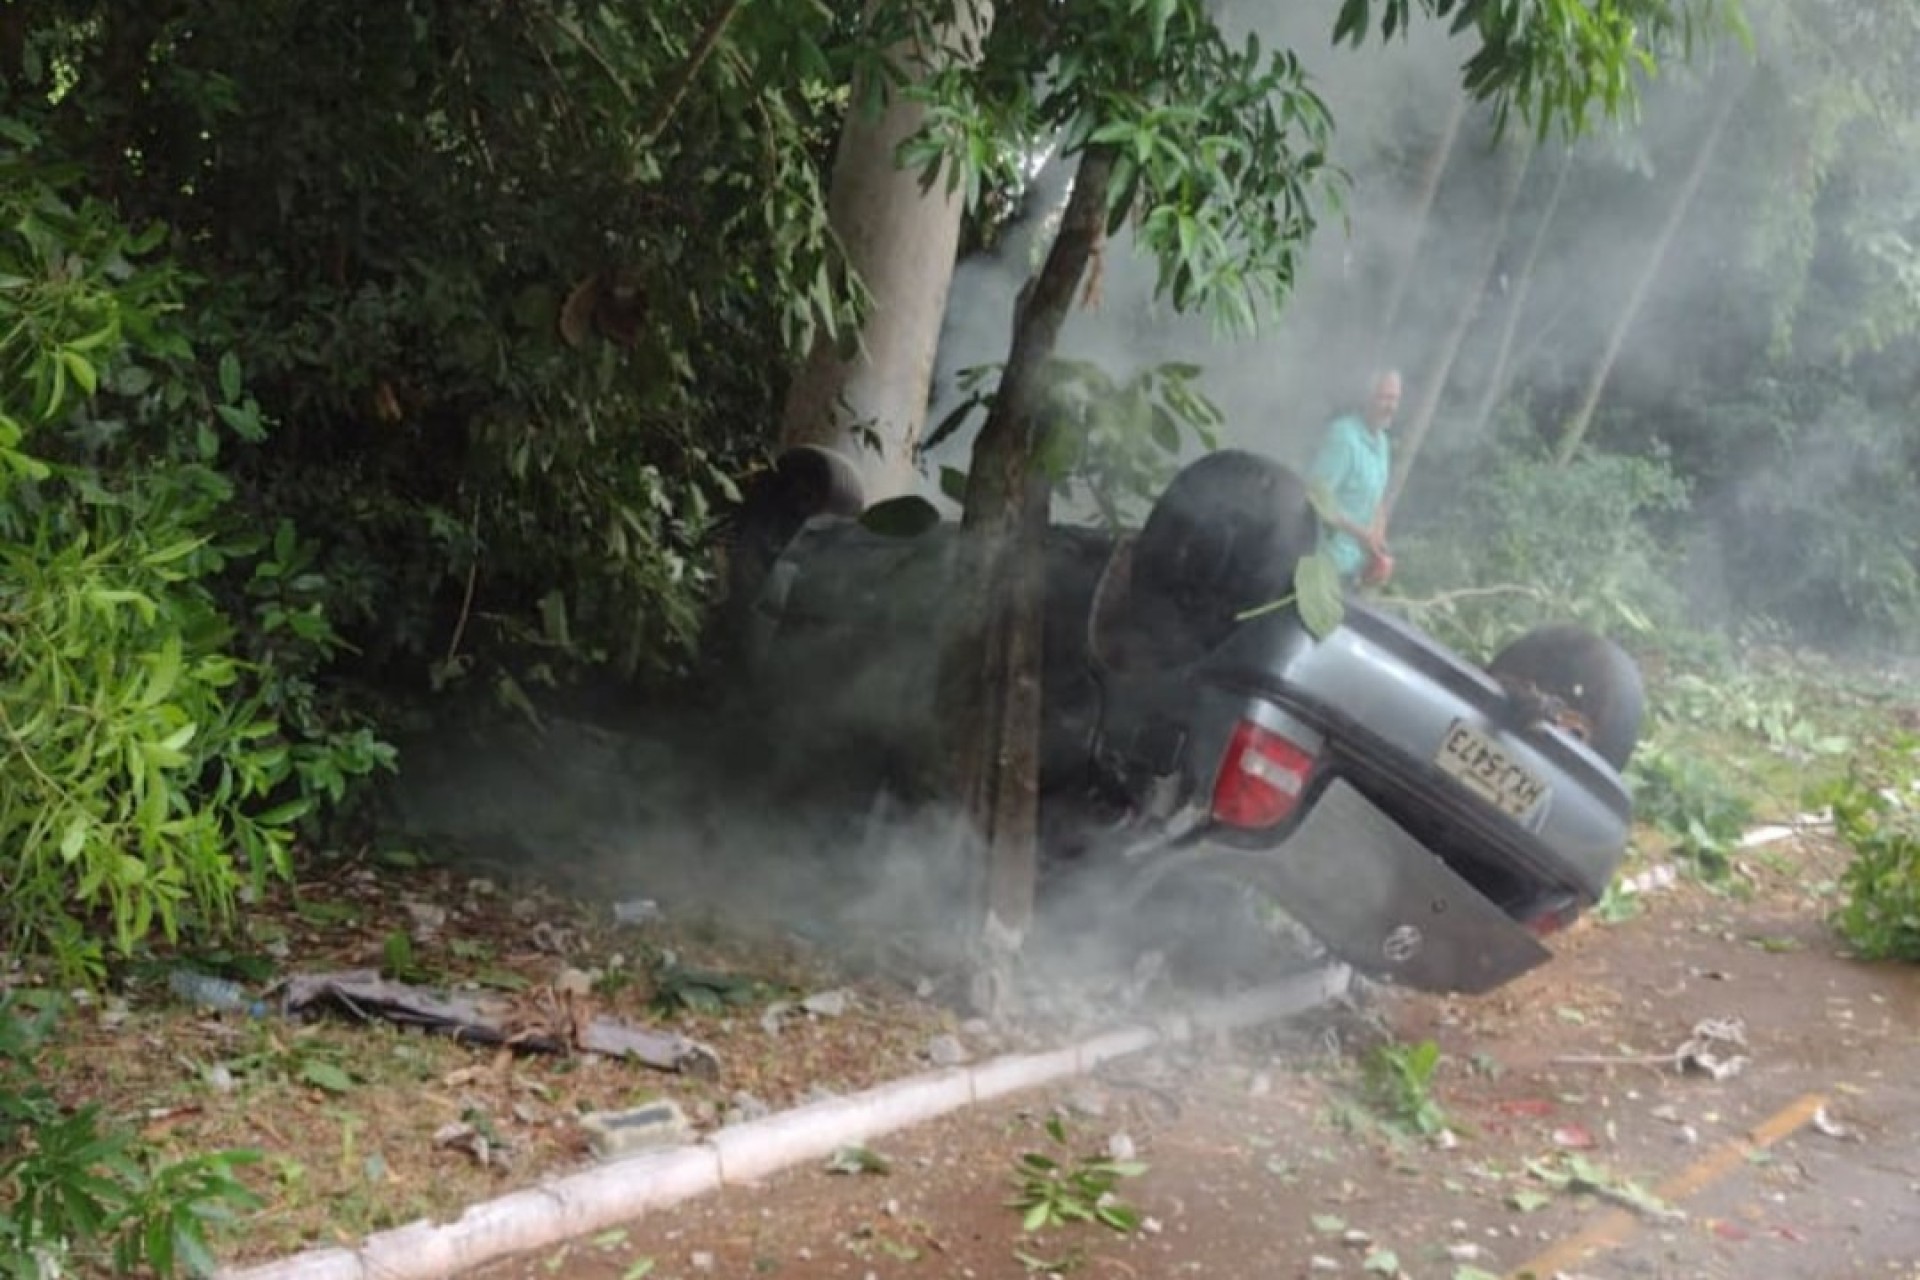 Veículo com placas de Itaipulândia capota na PR 495 em Serranópolis do Iguaçu e condutor fica ferido